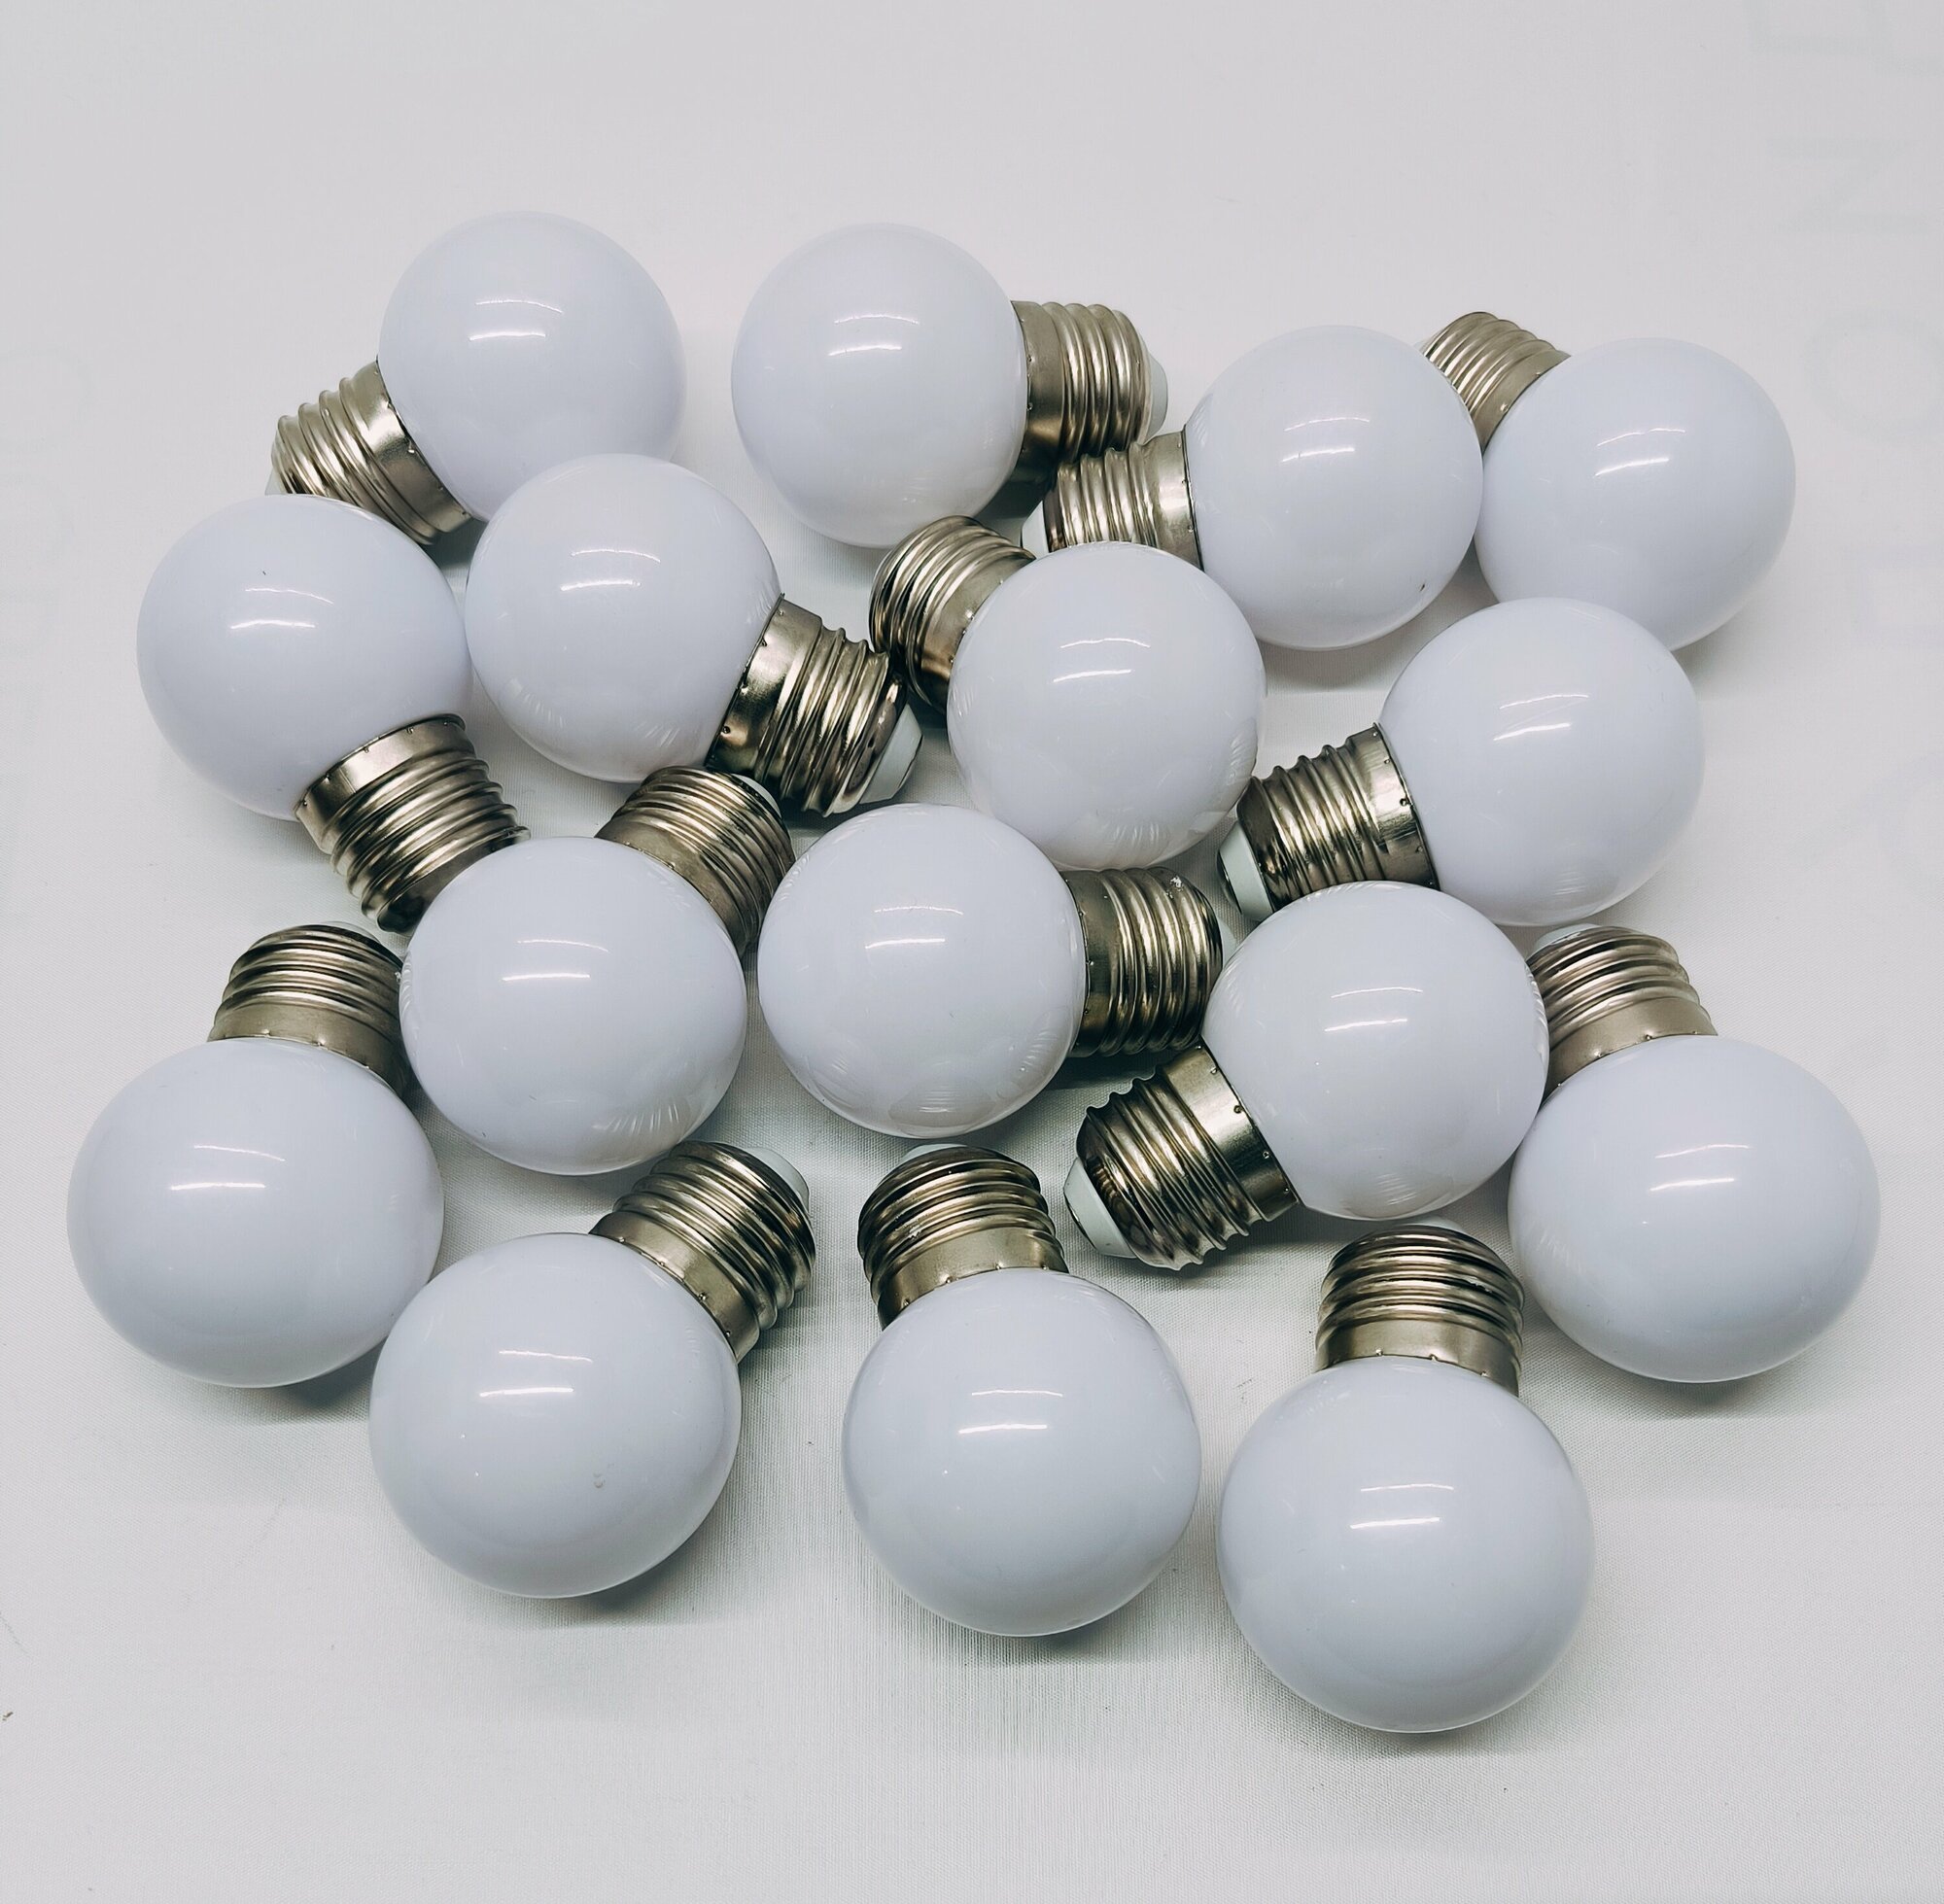 Лампы шарик для гирлянды белт лайт е27 набор 16ть штук 6500K